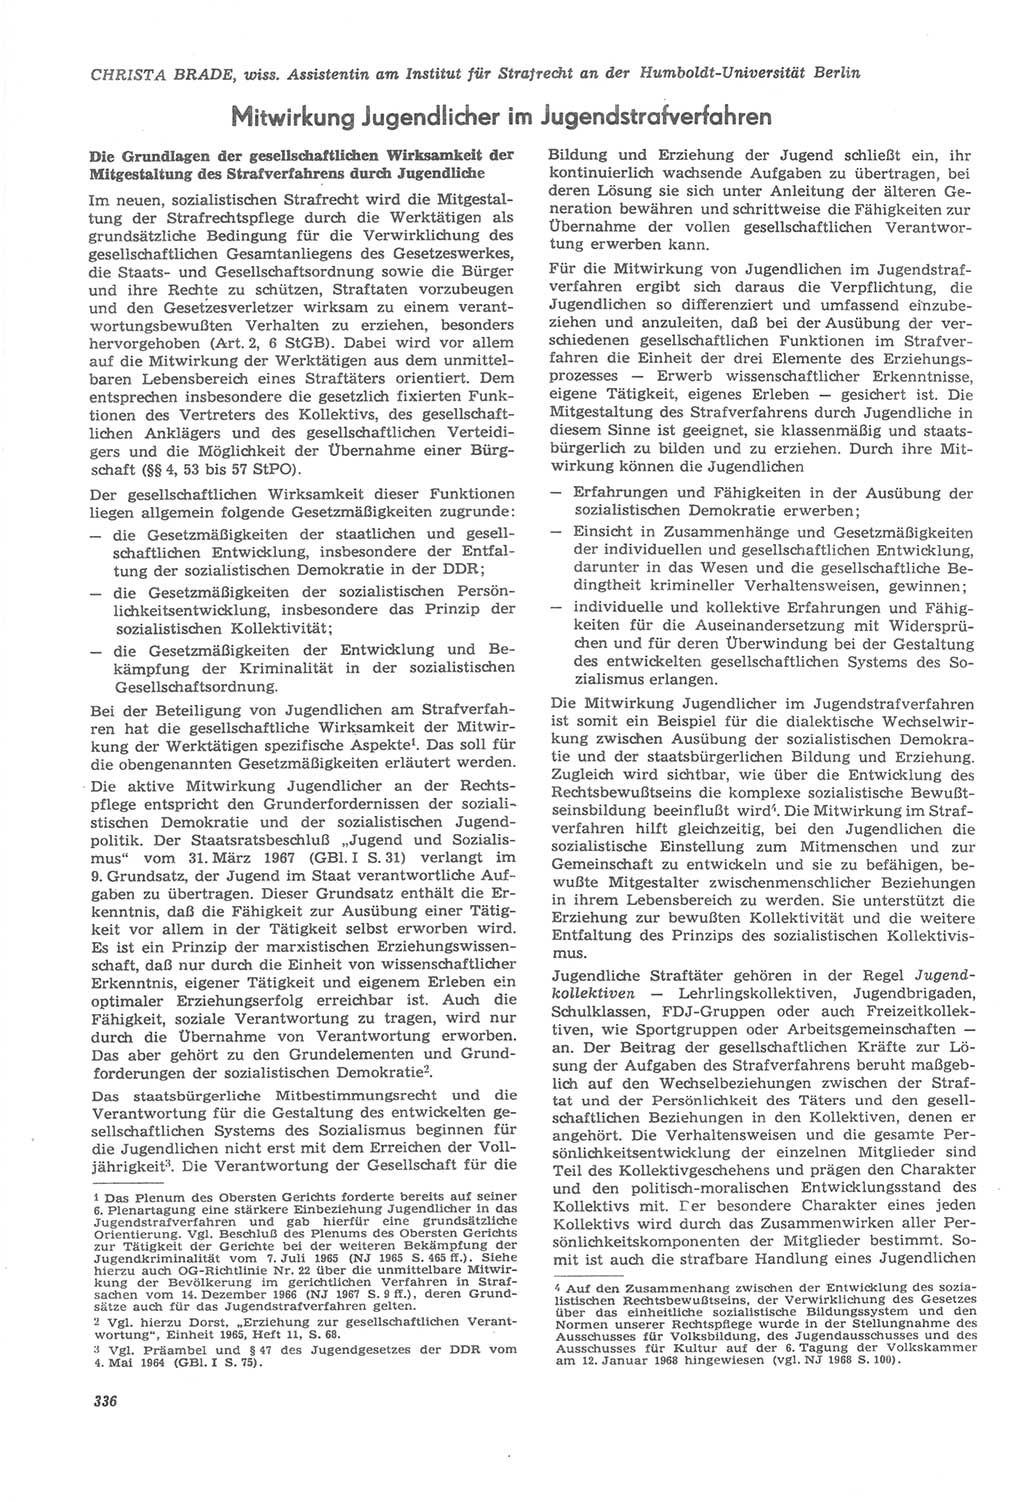 Neue Justiz (NJ), Zeitschrift für Recht und Rechtswissenschaft [Deutsche Demokratische Republik (DDR)], 22. Jahrgang 1968, Seite 336 (NJ DDR 1968, S. 336)